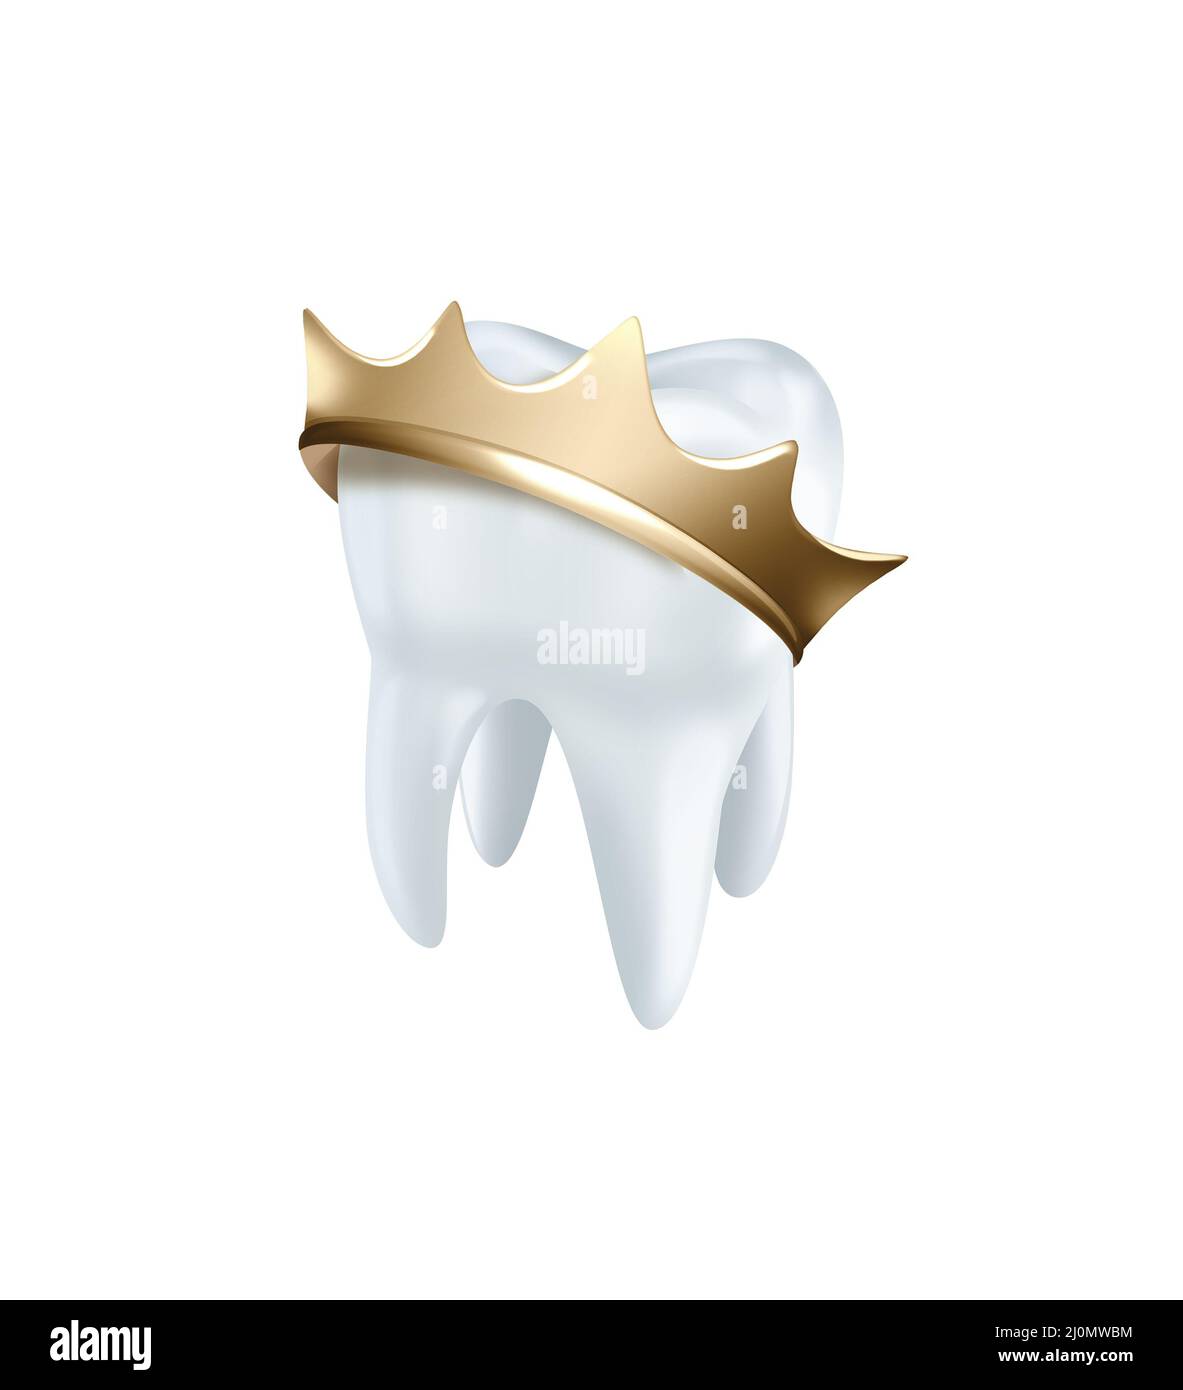 NQEUEPN Caja de dientes de madera, lindo diente blanco 3D imagen